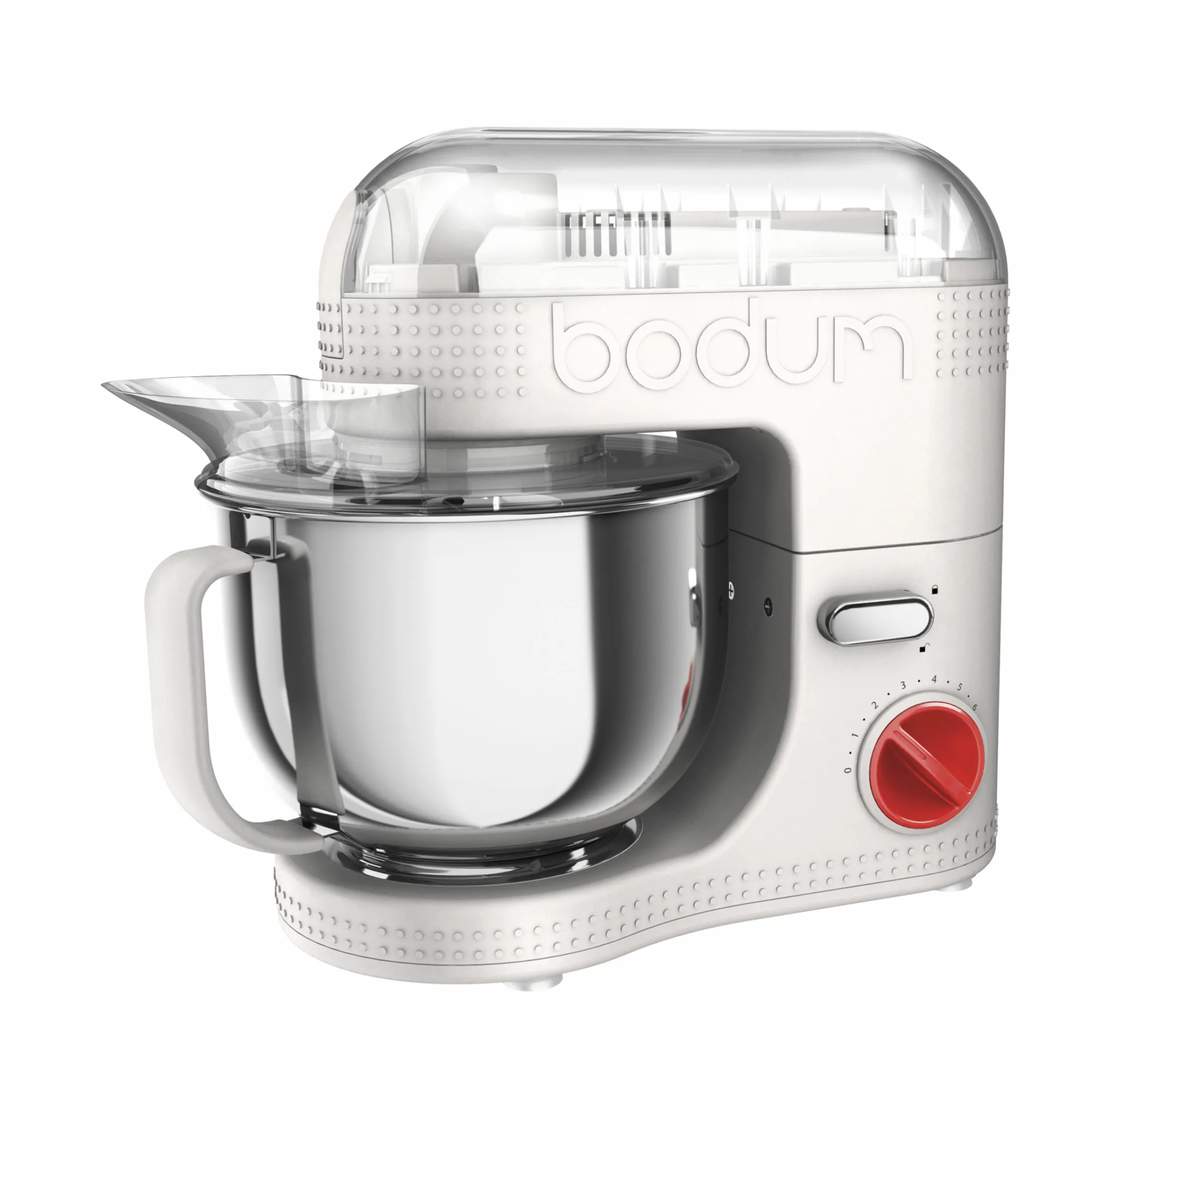 Bodum - Bistro Køkkenmaskine 4,7 liter - 7 - Inkl. ekstra dele | Imerco